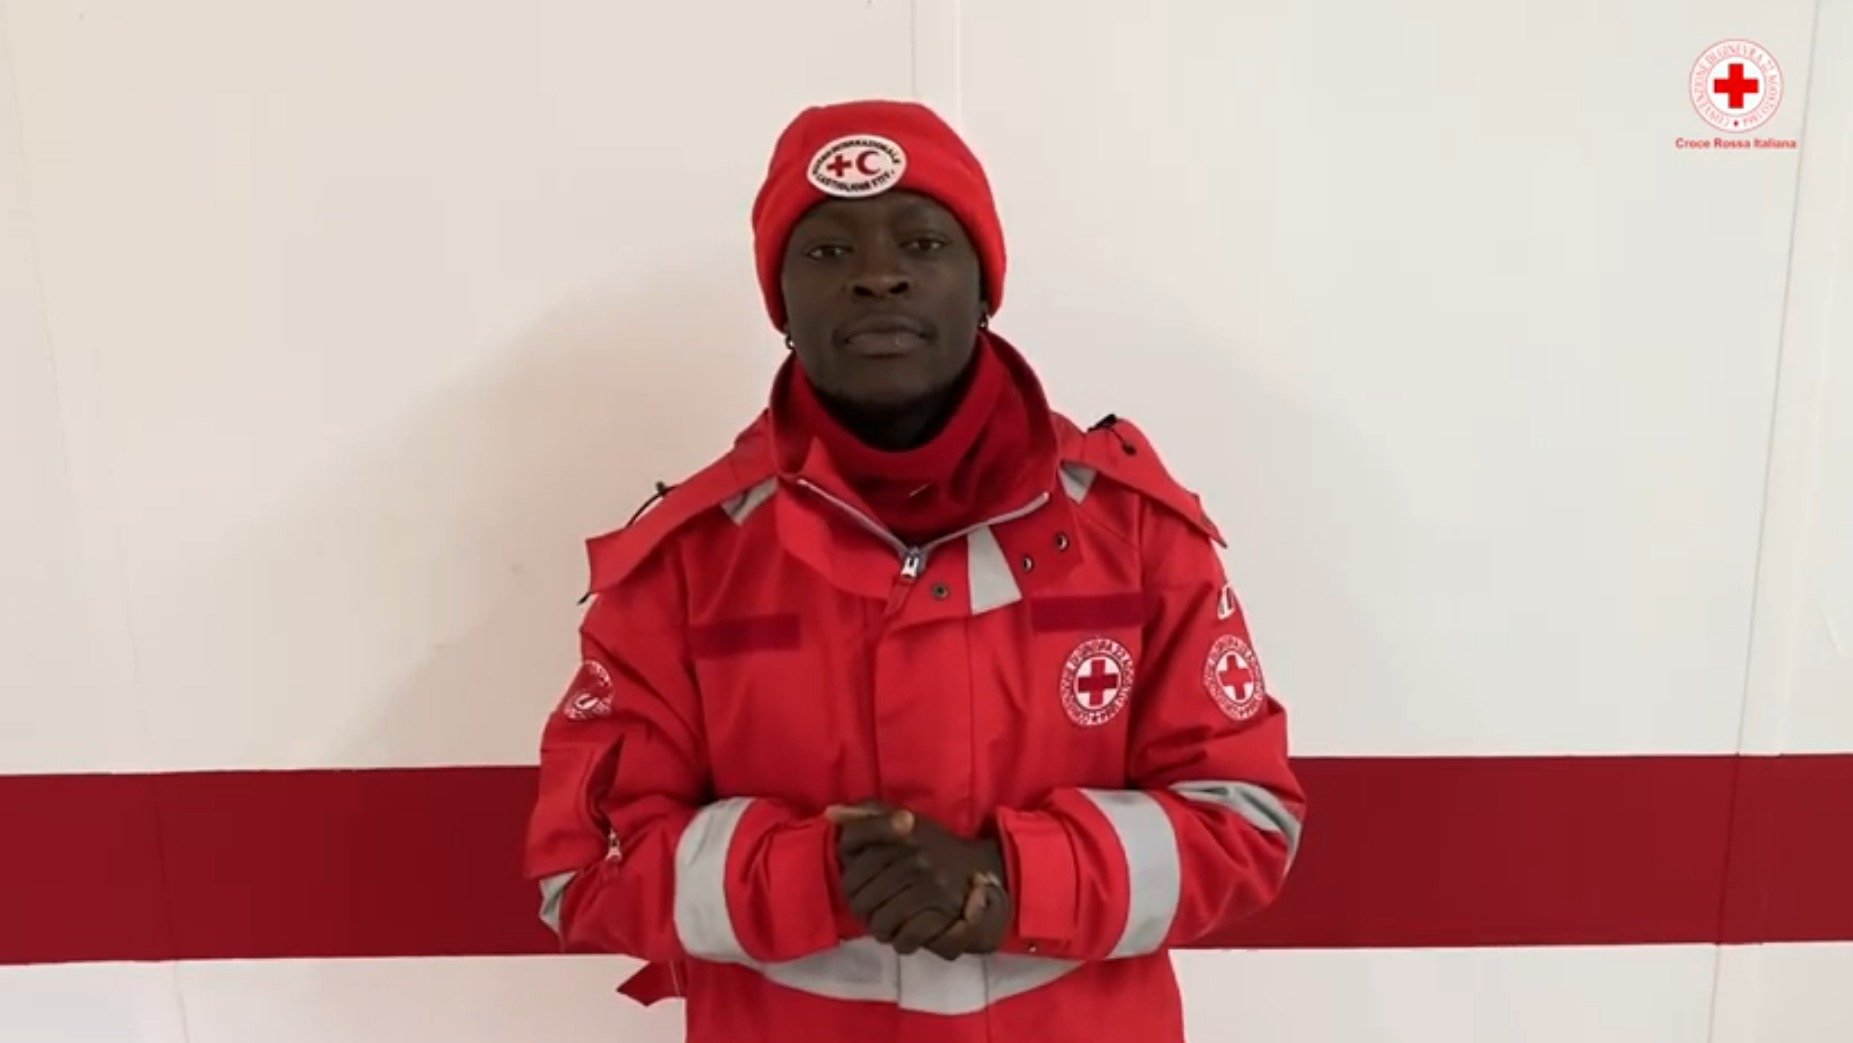 CORONAVIRUS. I video dei “volontari virtuali” della Croce rossa per spiegare l’emergenza in diverse lingue